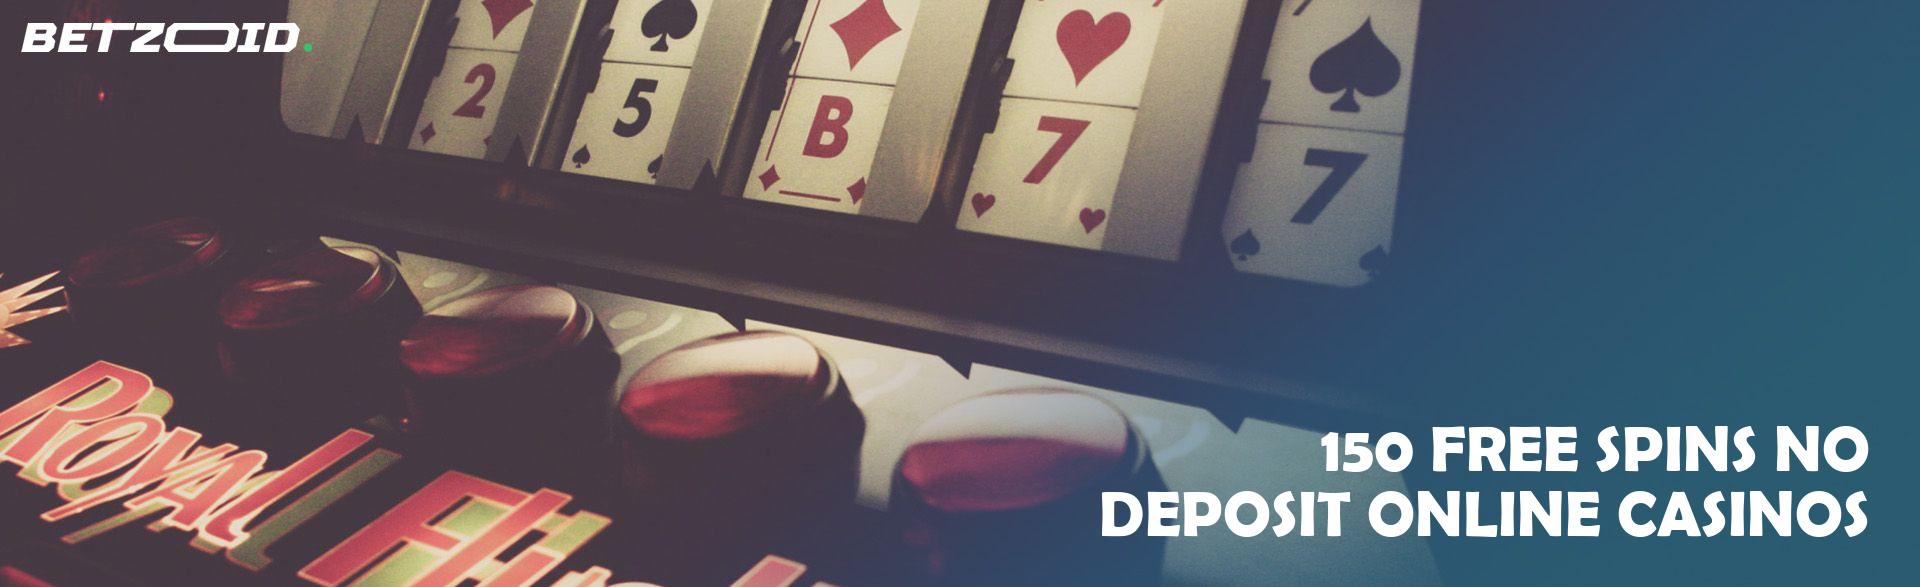 150 Free Spins No Deposit Online Casinos.